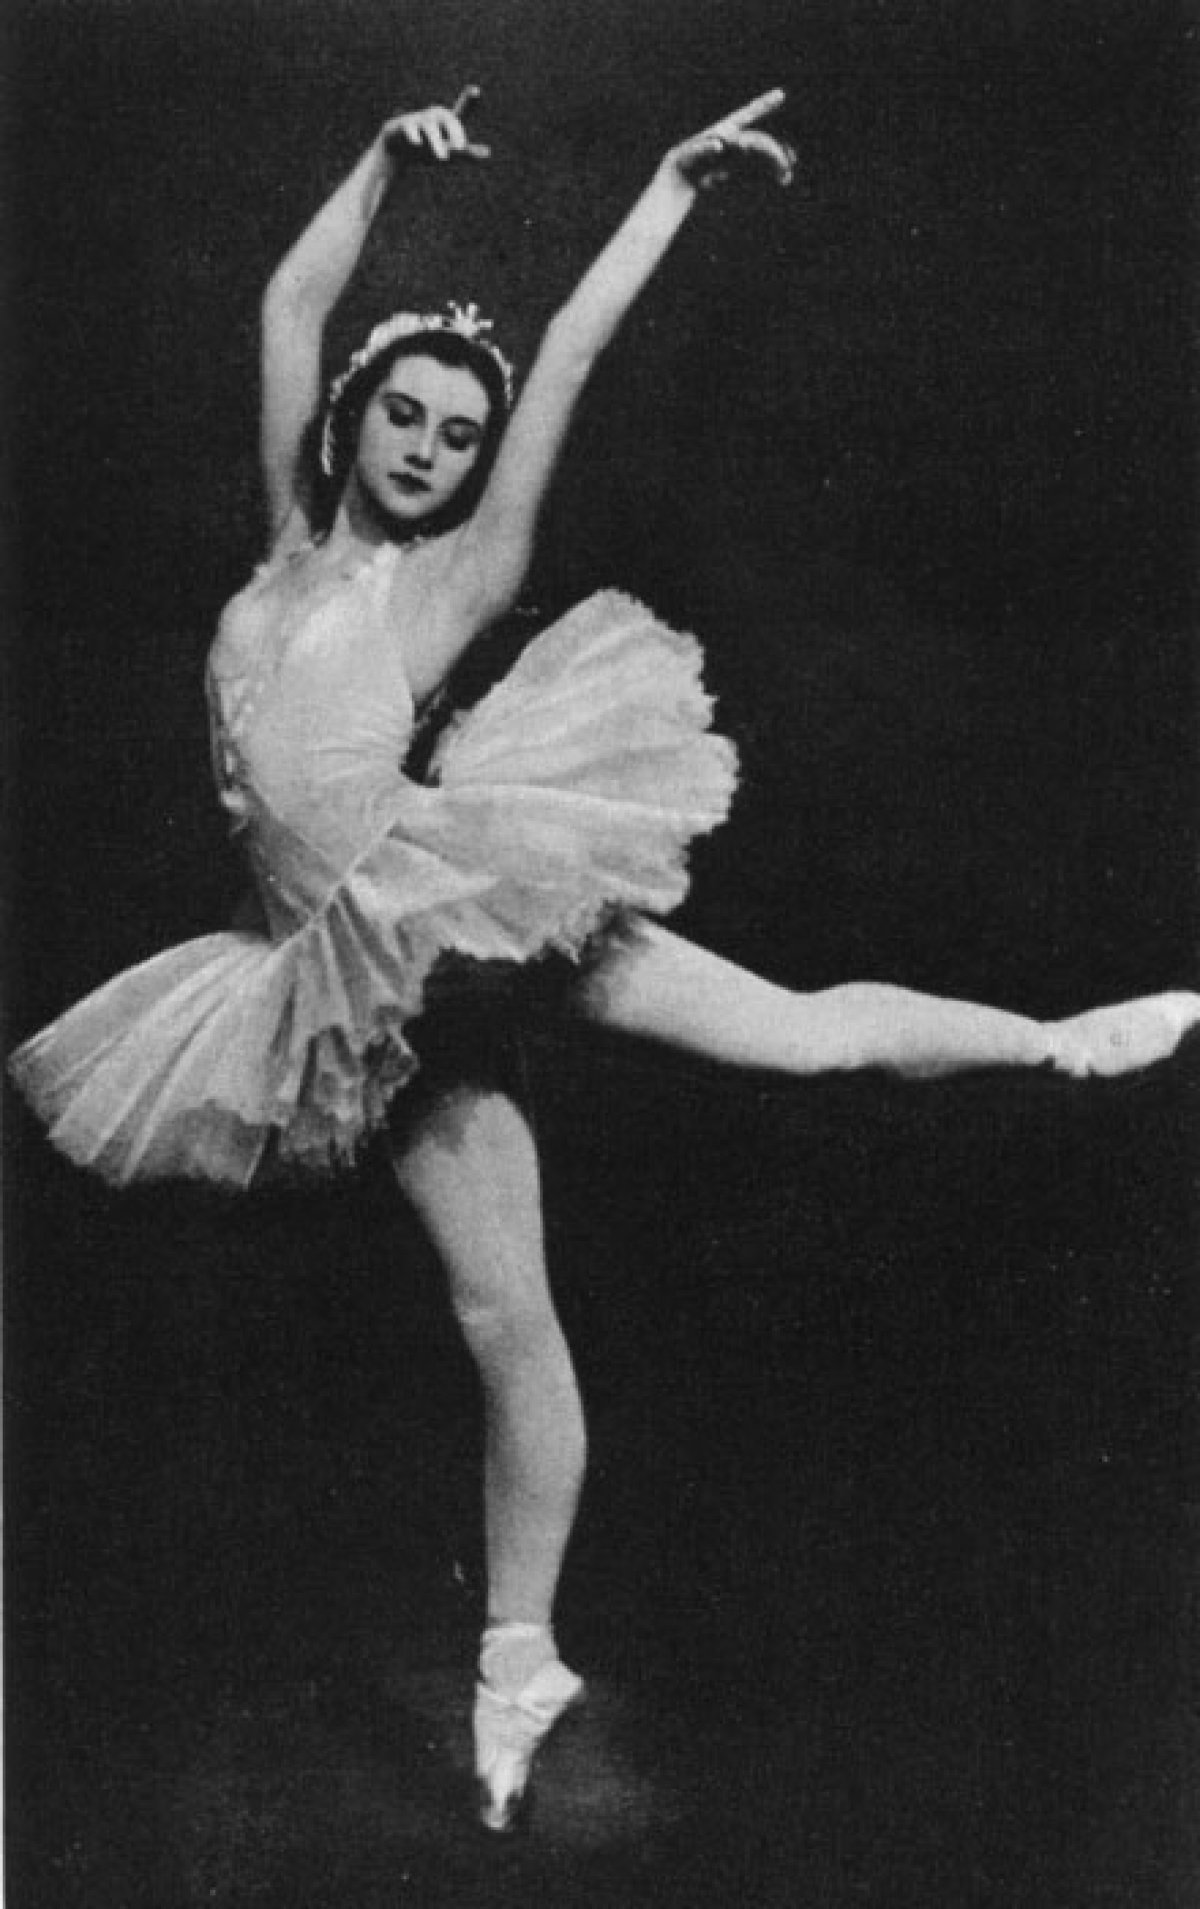 Татьяна вечеслова балерина фото